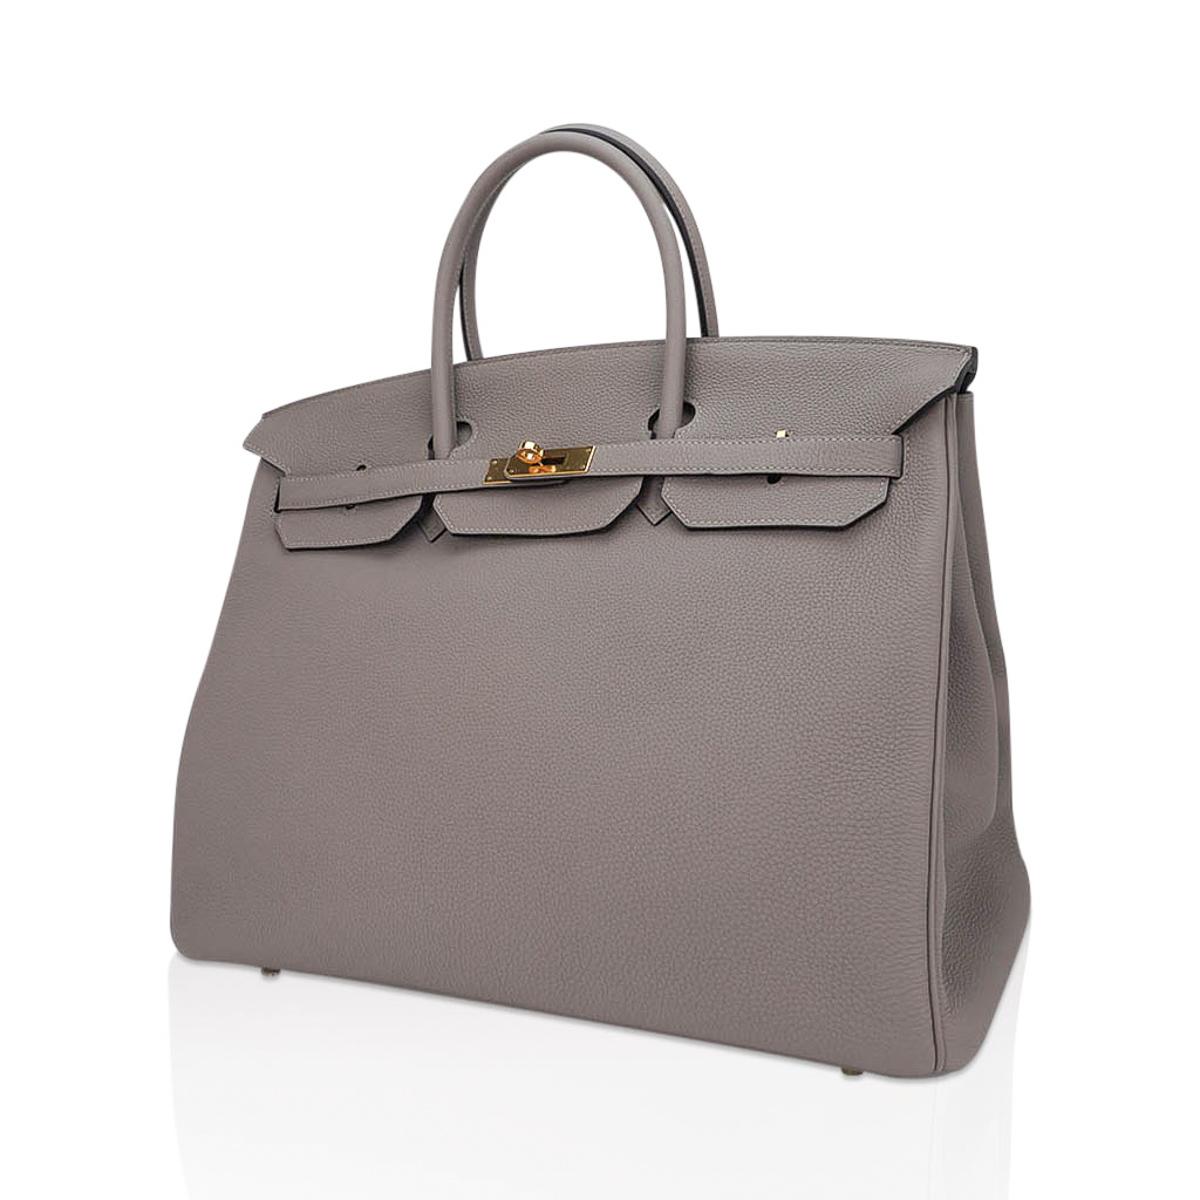 Women's Hermes Birkin 35 Gris Asphalte Bag Gold Hardware Togo Leather